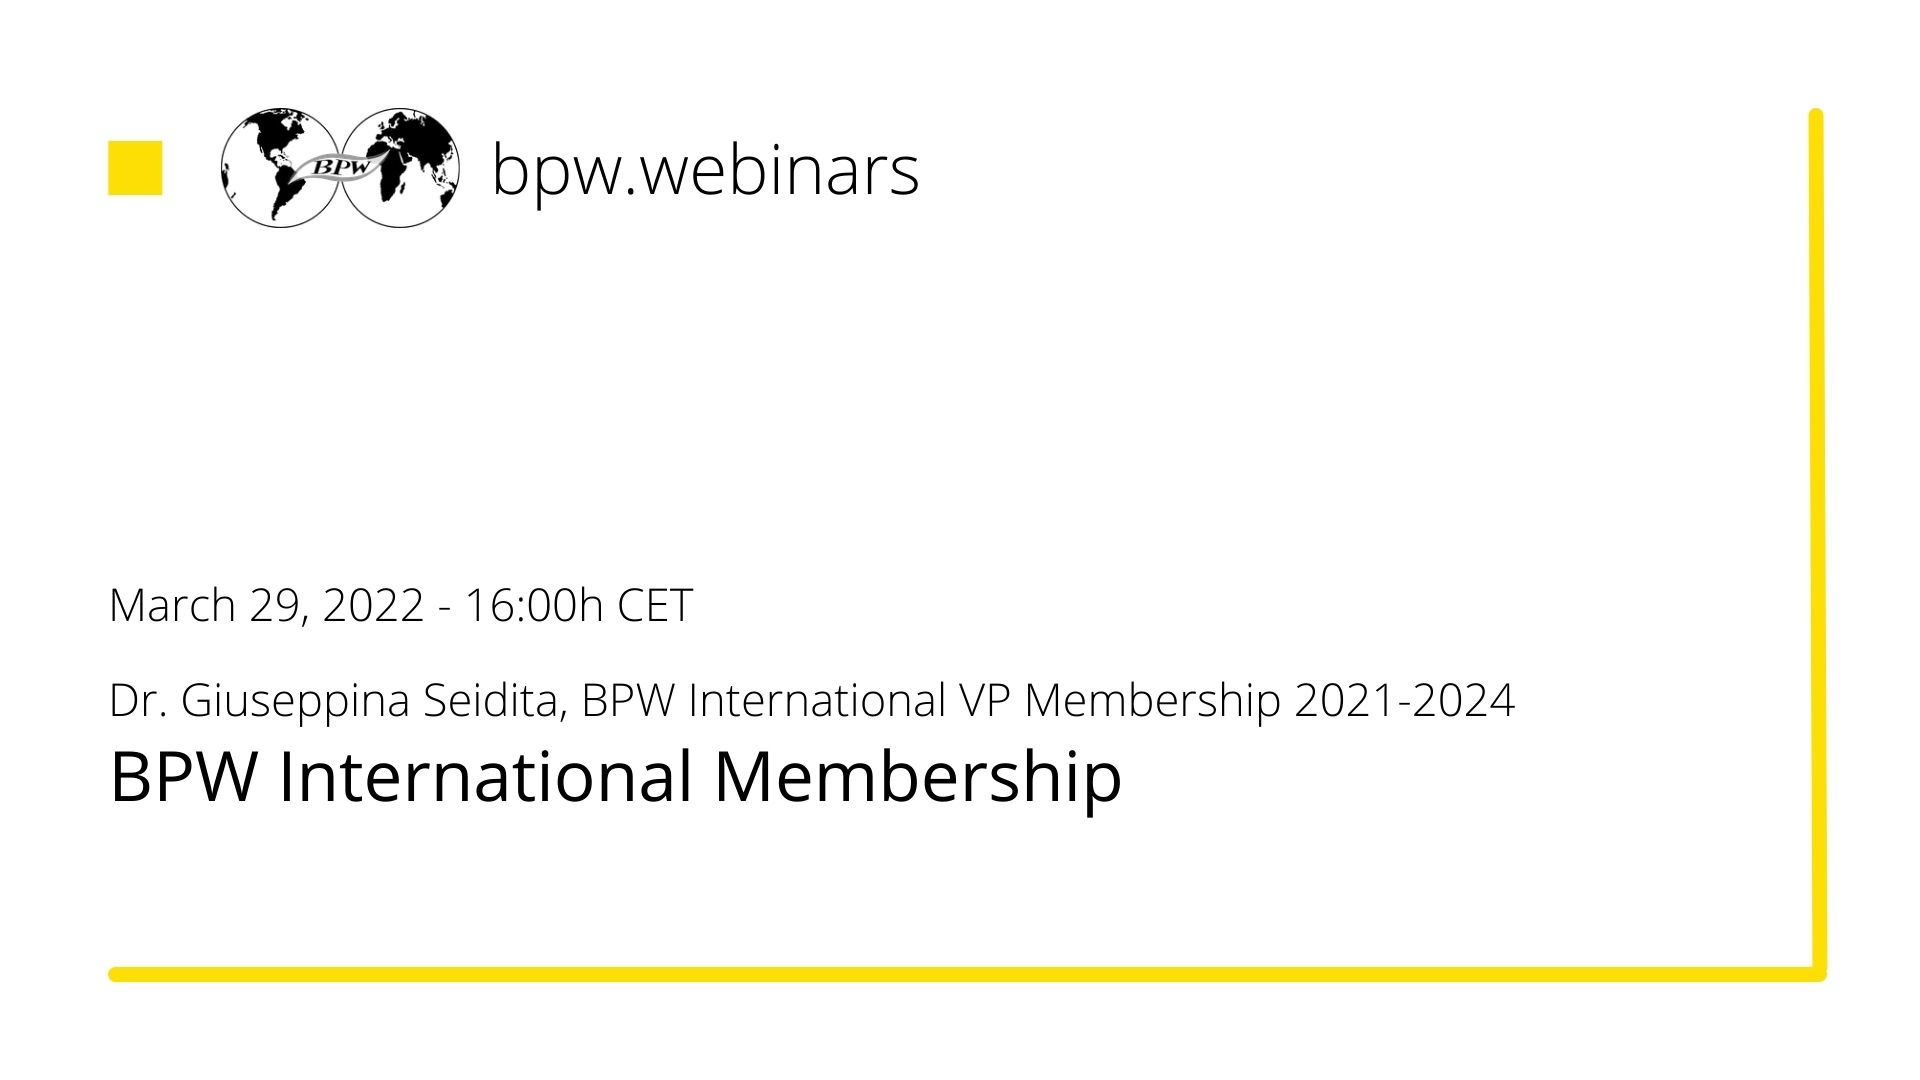 bpw.webinars - Video "BPW International Membership"